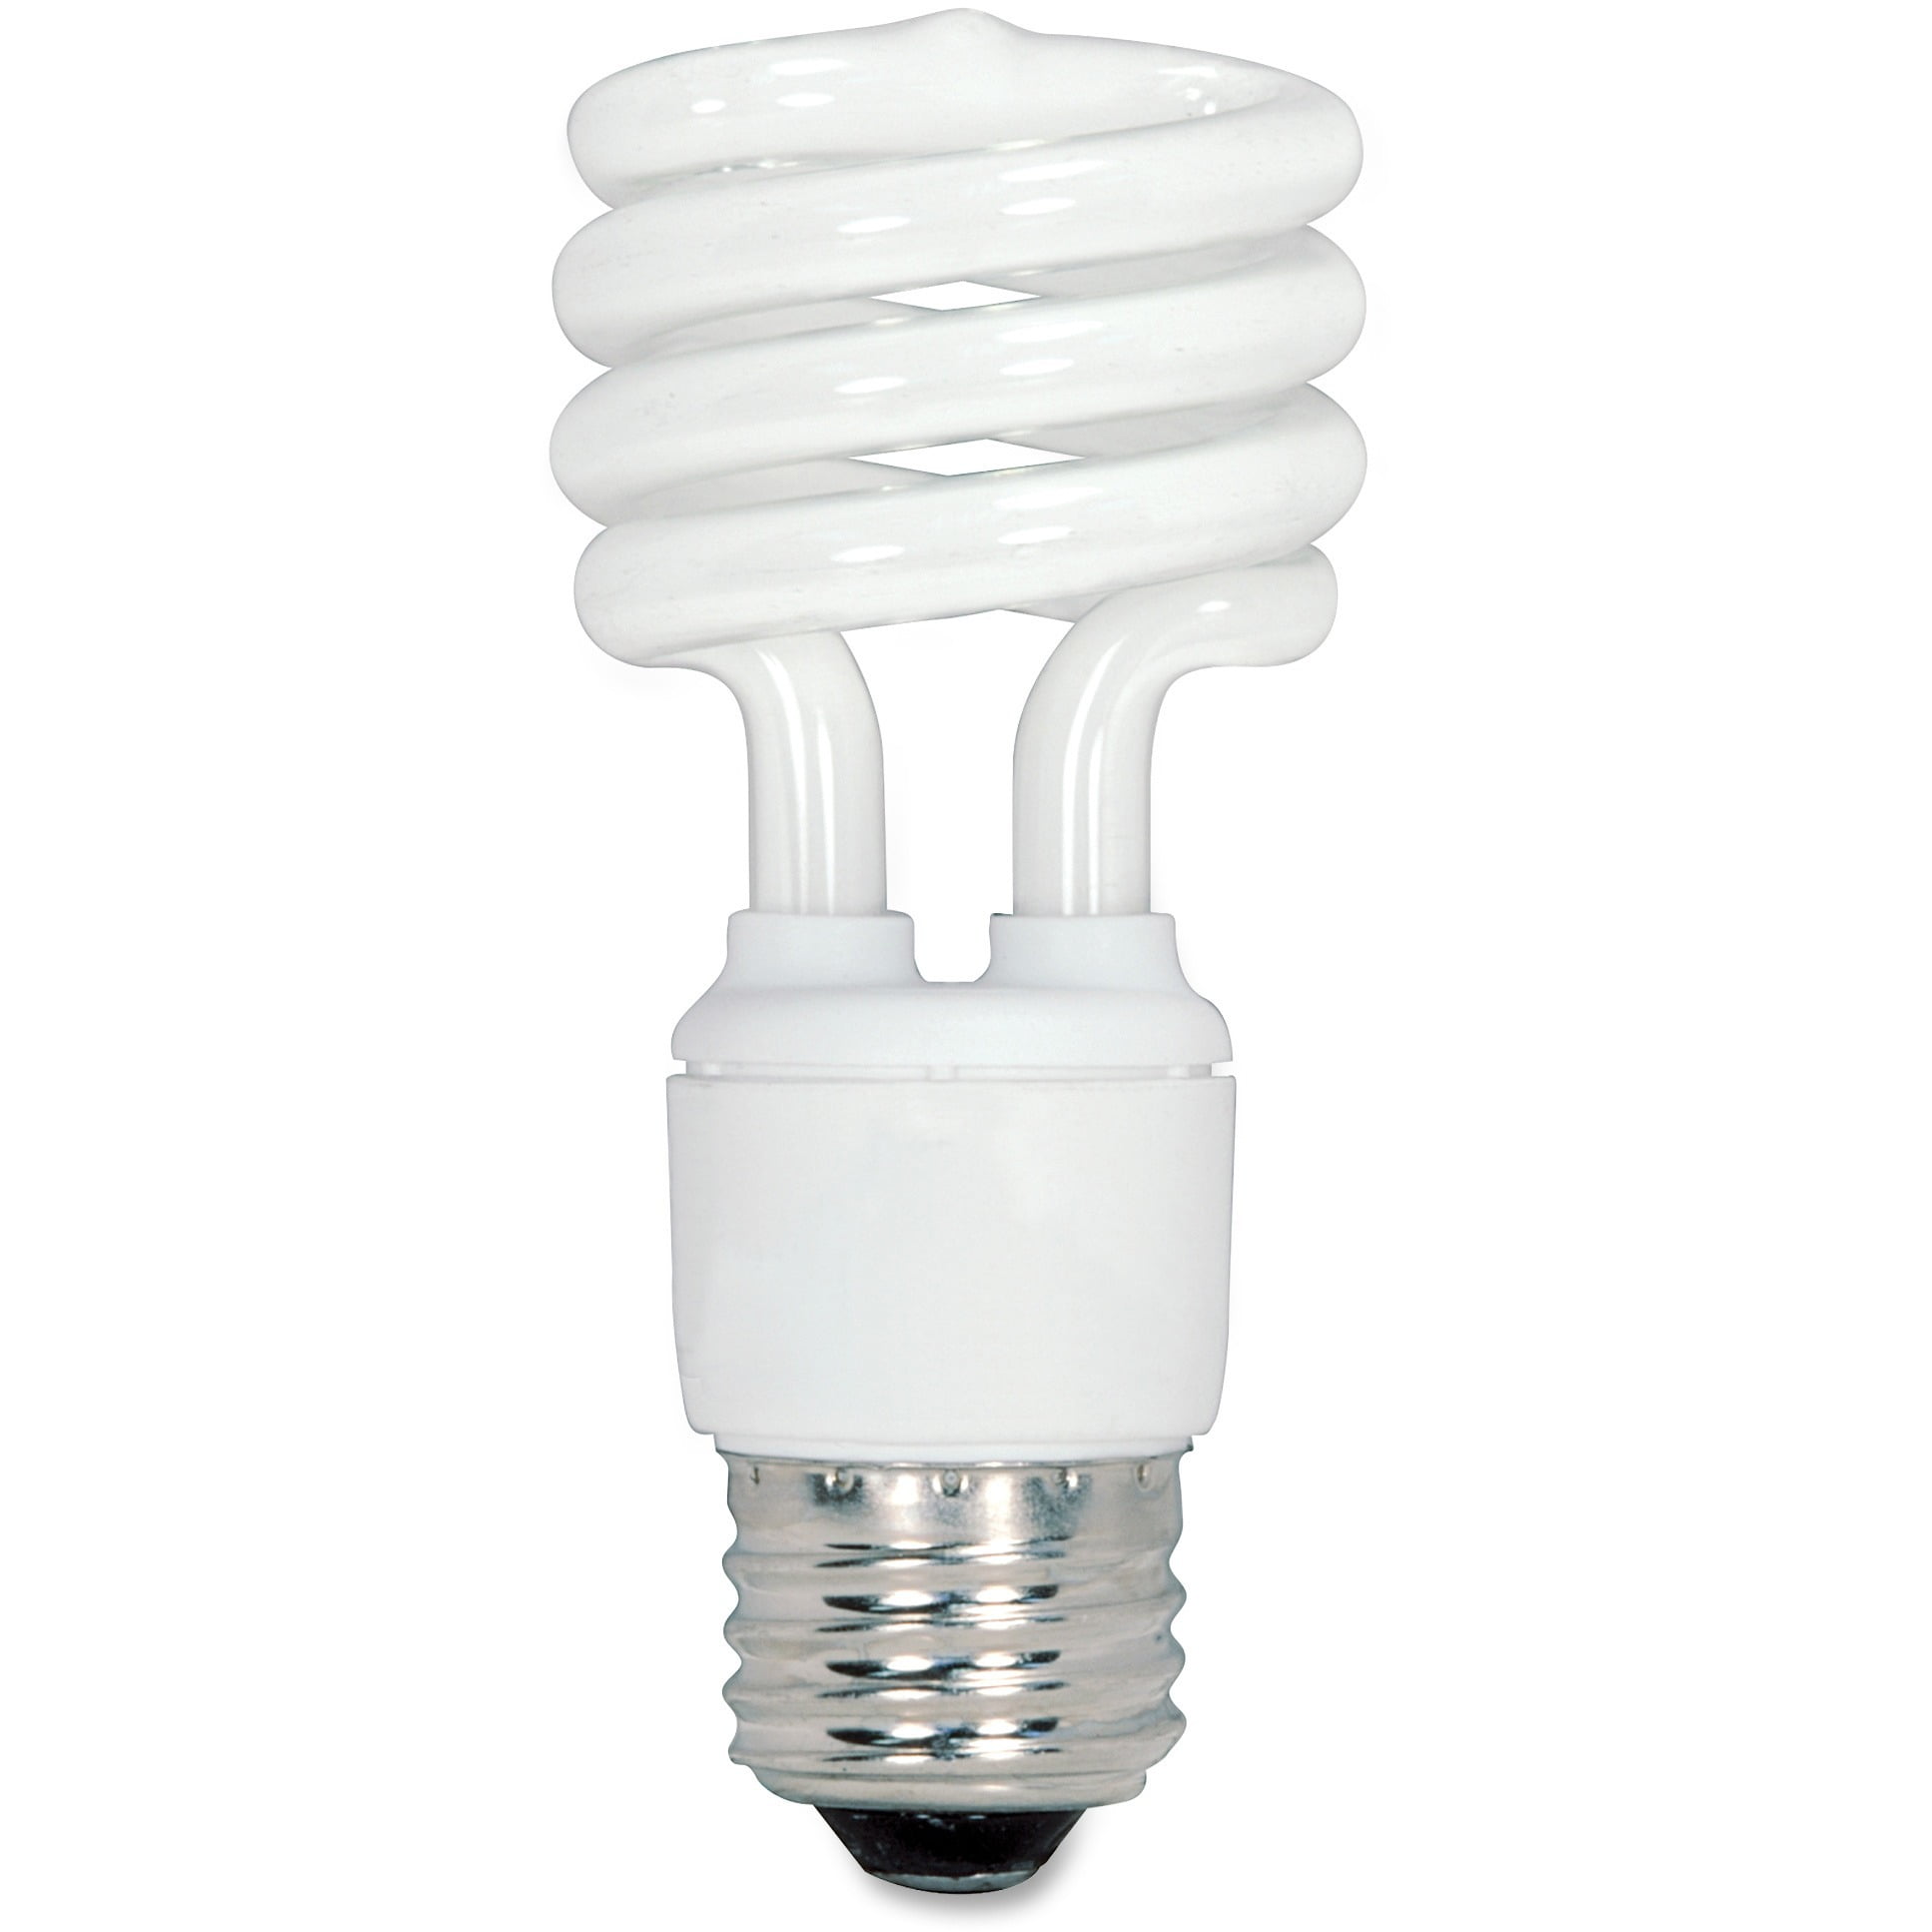 Case of 24 80101441 14W Mini SpringLamp CFL 